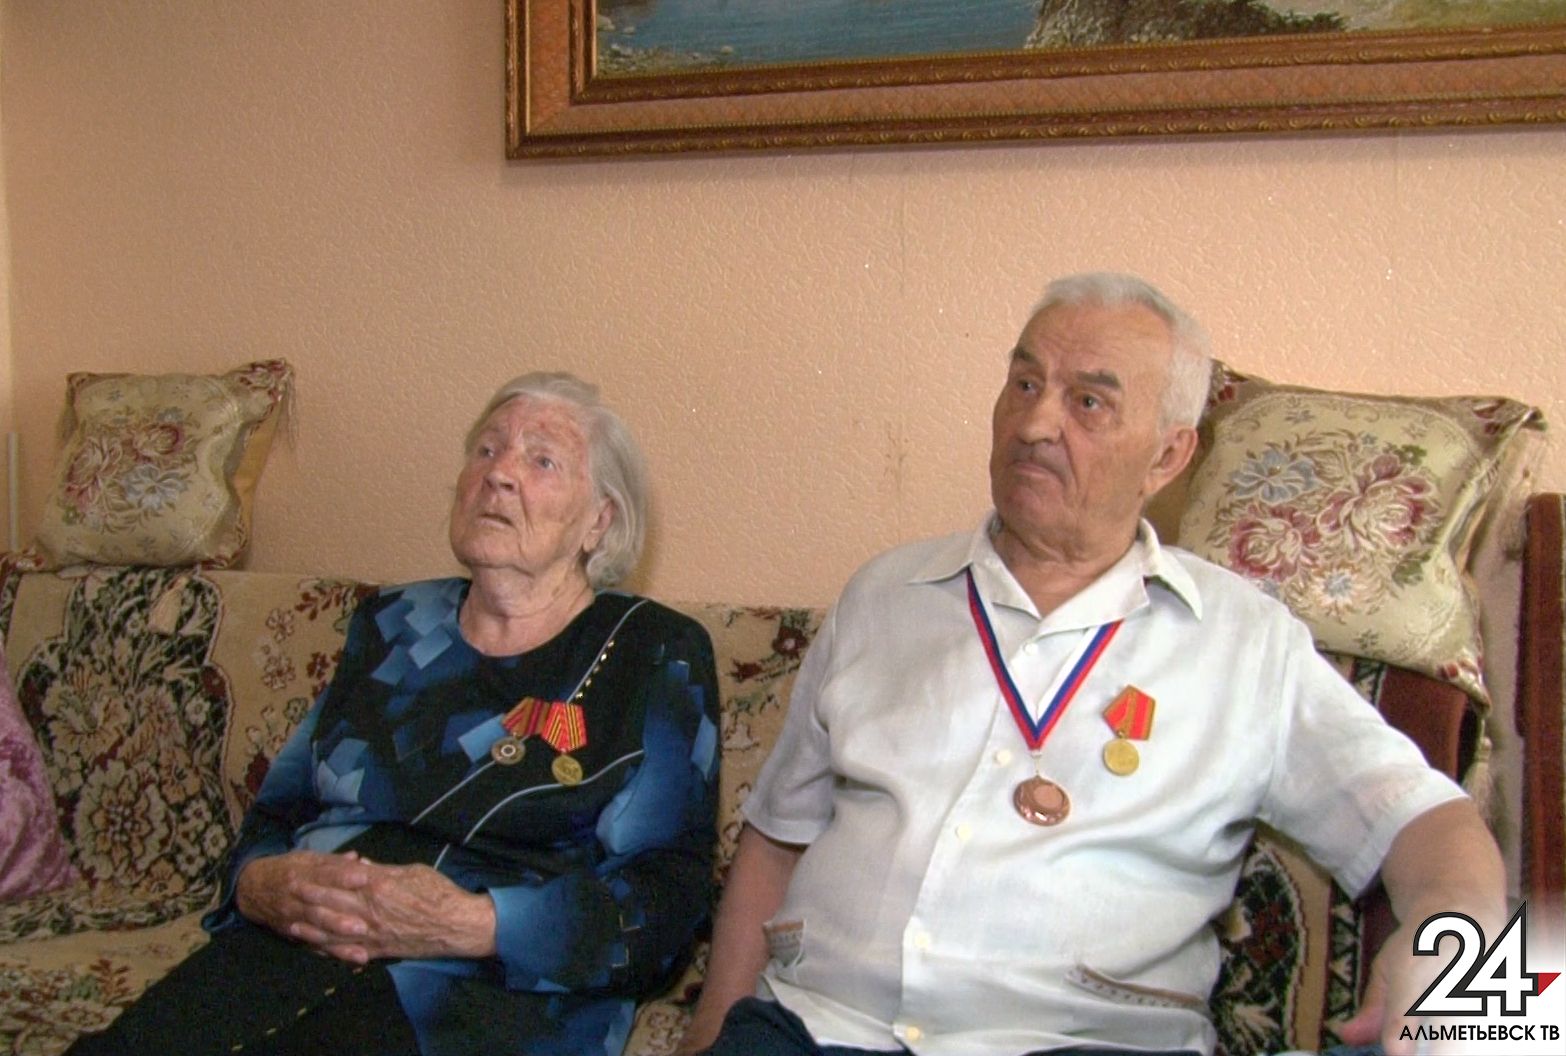 Ромашковая свадьба: семейное счастье супругов Яшиных из Альметьевска длится почти 70 лет